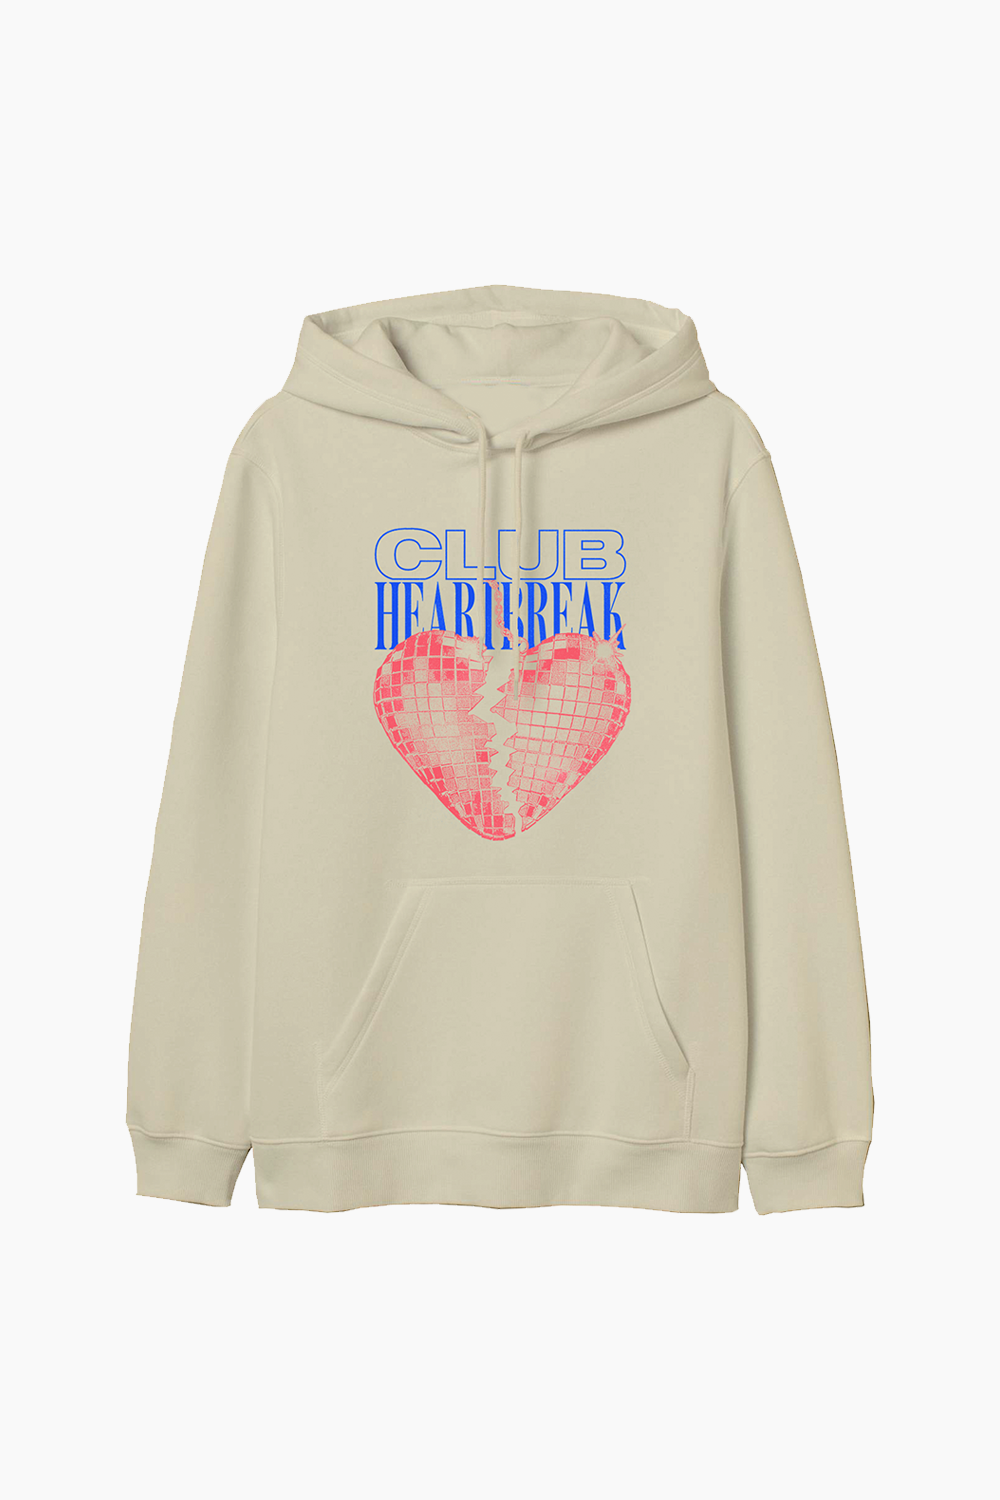 HEARTBREAK hoodie